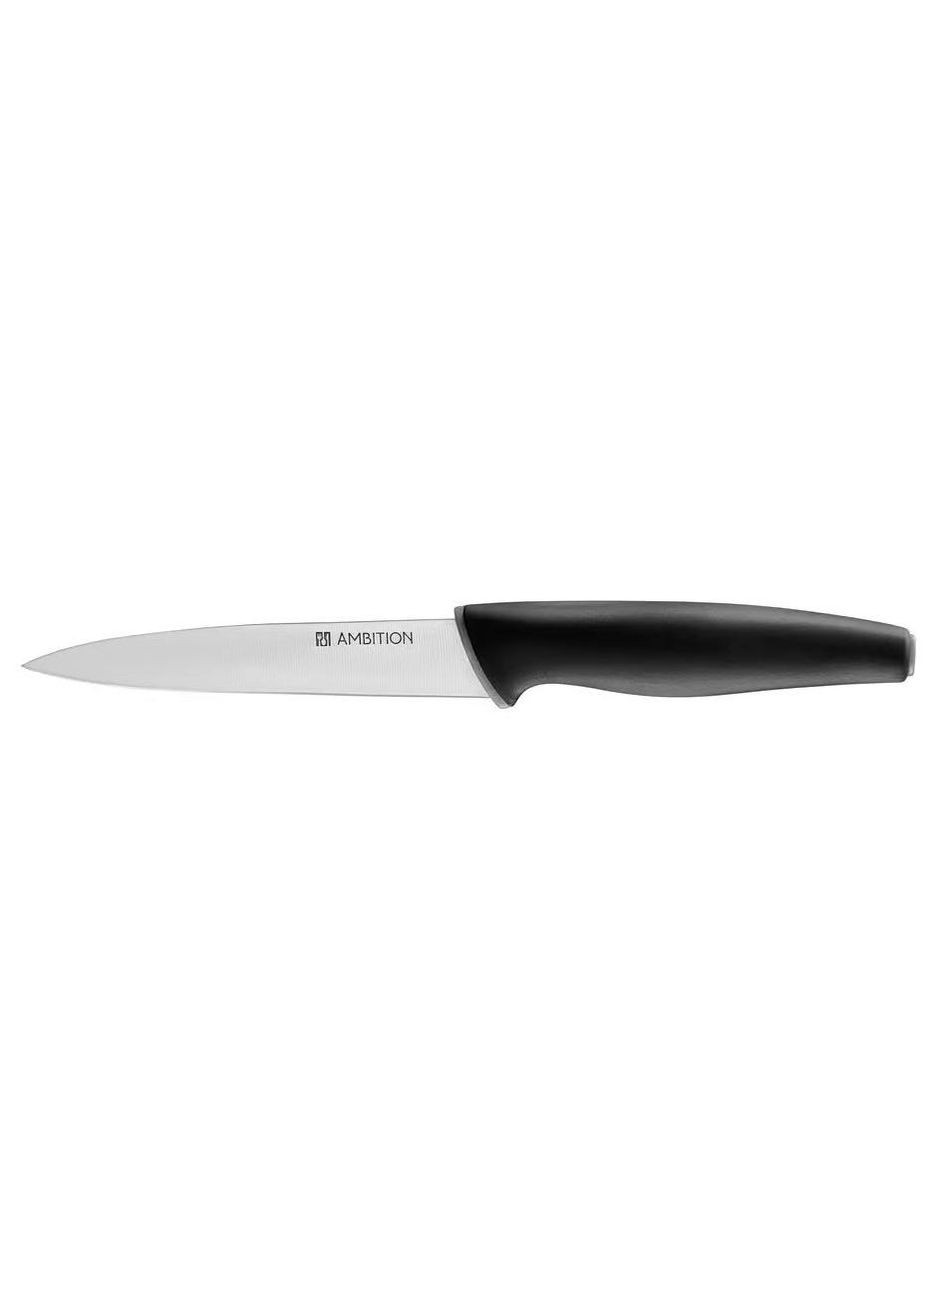 Нож универсальный 13 см Aspiro нержавеющая сталь арт. 51235 Ambition (260648791)